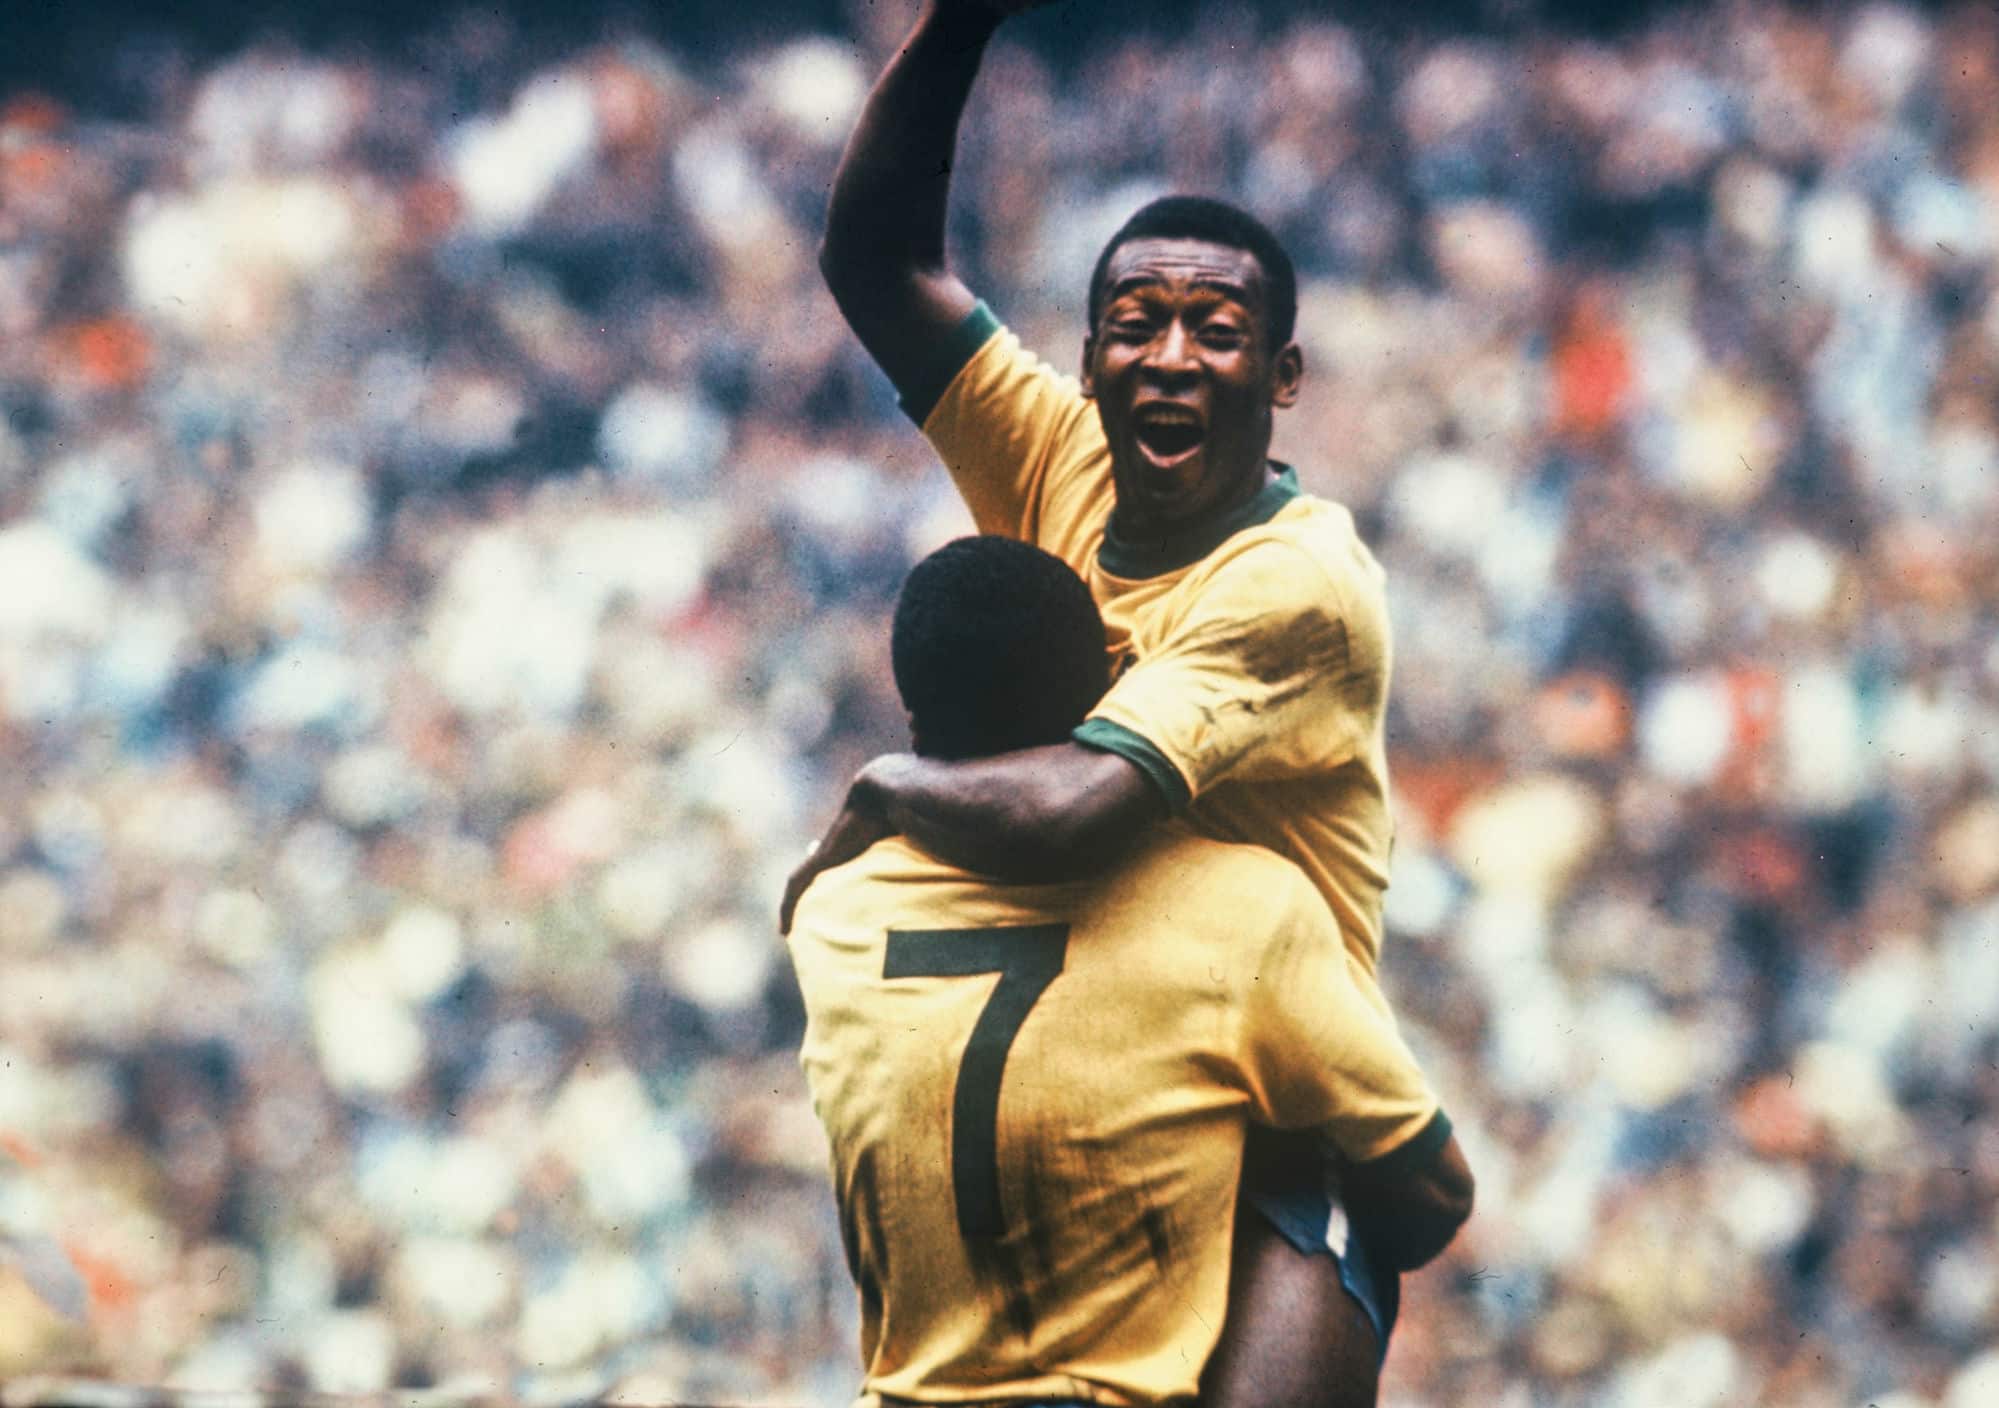 Histórias da Copa do Mundo: Brasil tricampeão mundial, foi o melhor time da história? (1970)